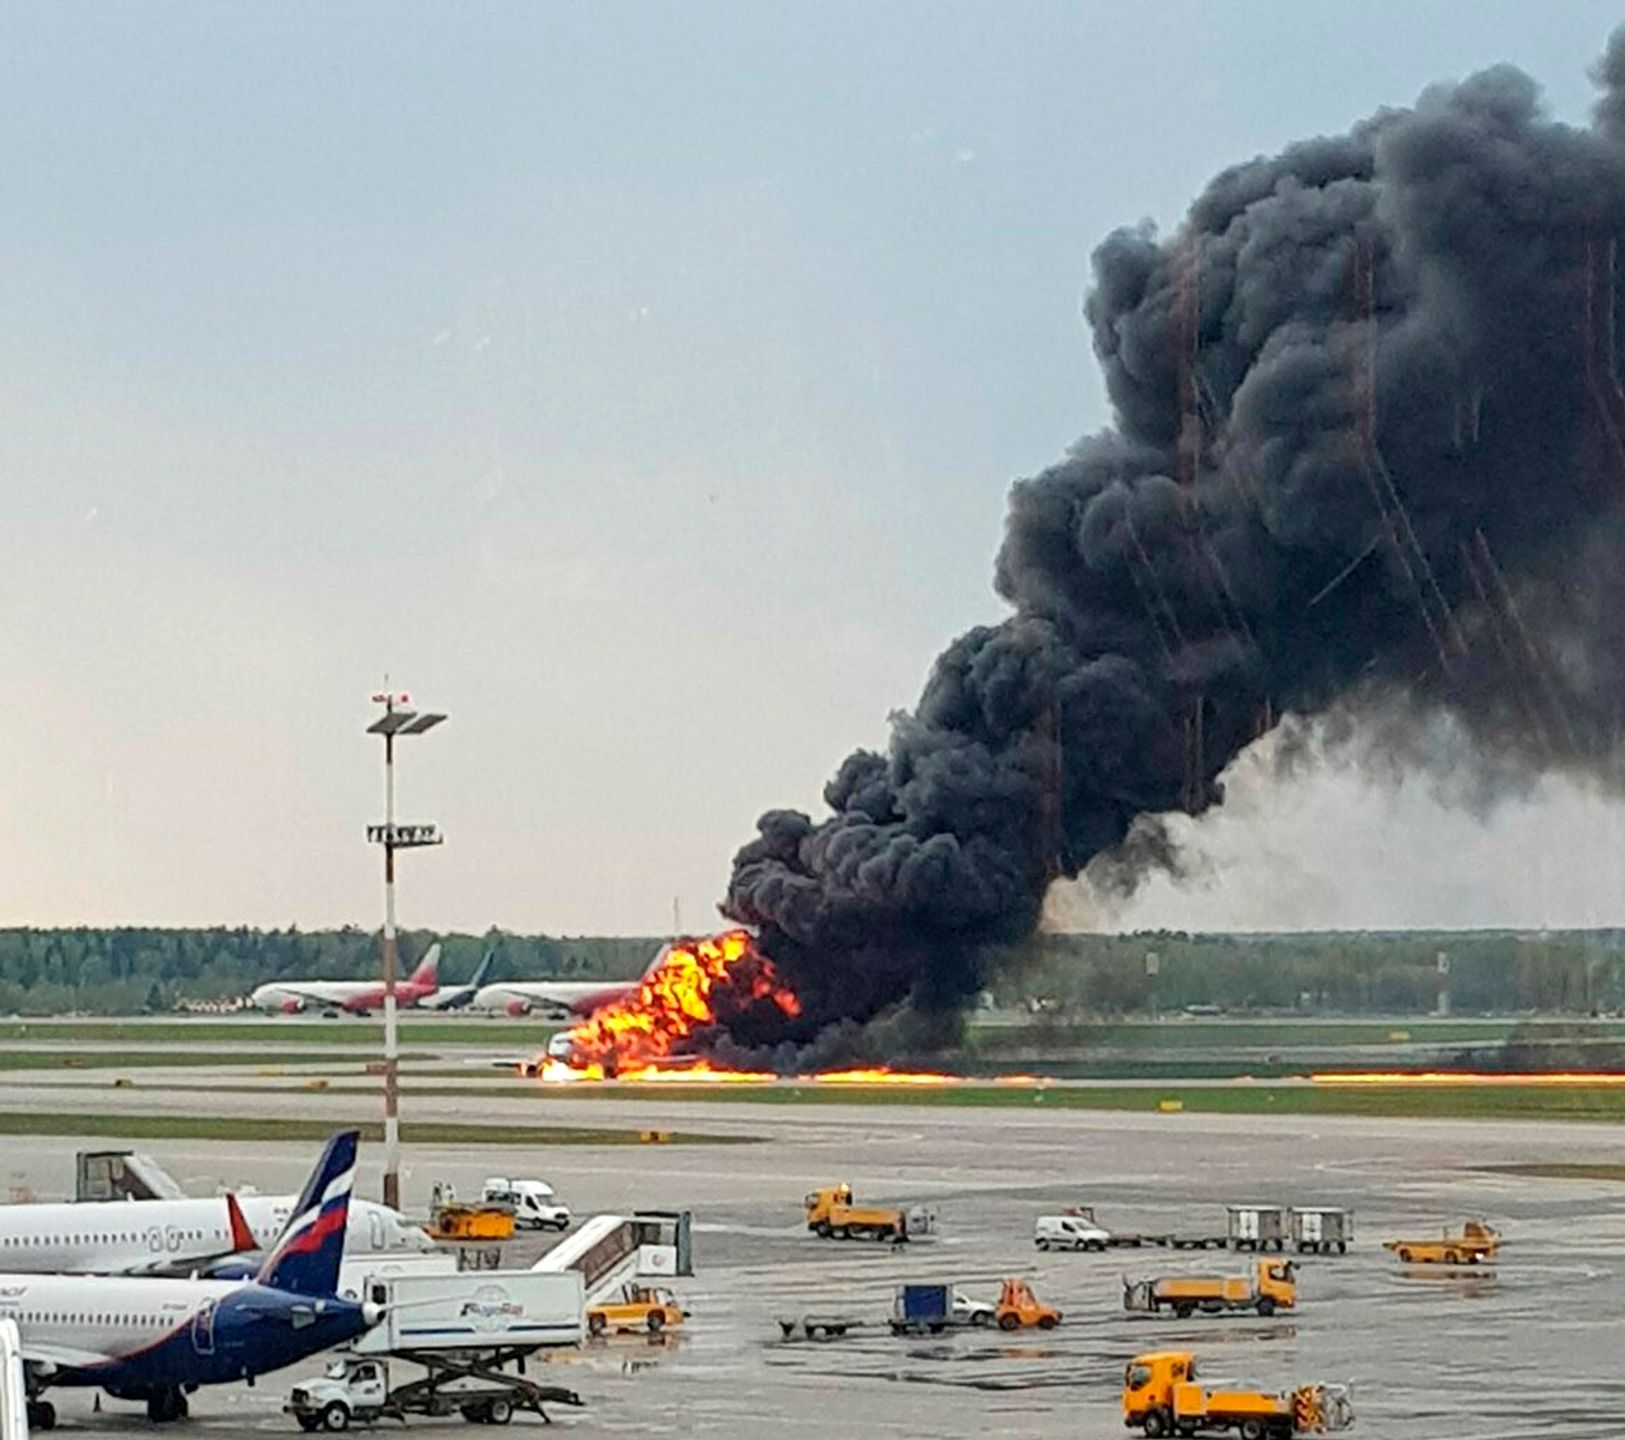 علت سقوط هواپیما با چند فیلم قابل استناد نیست